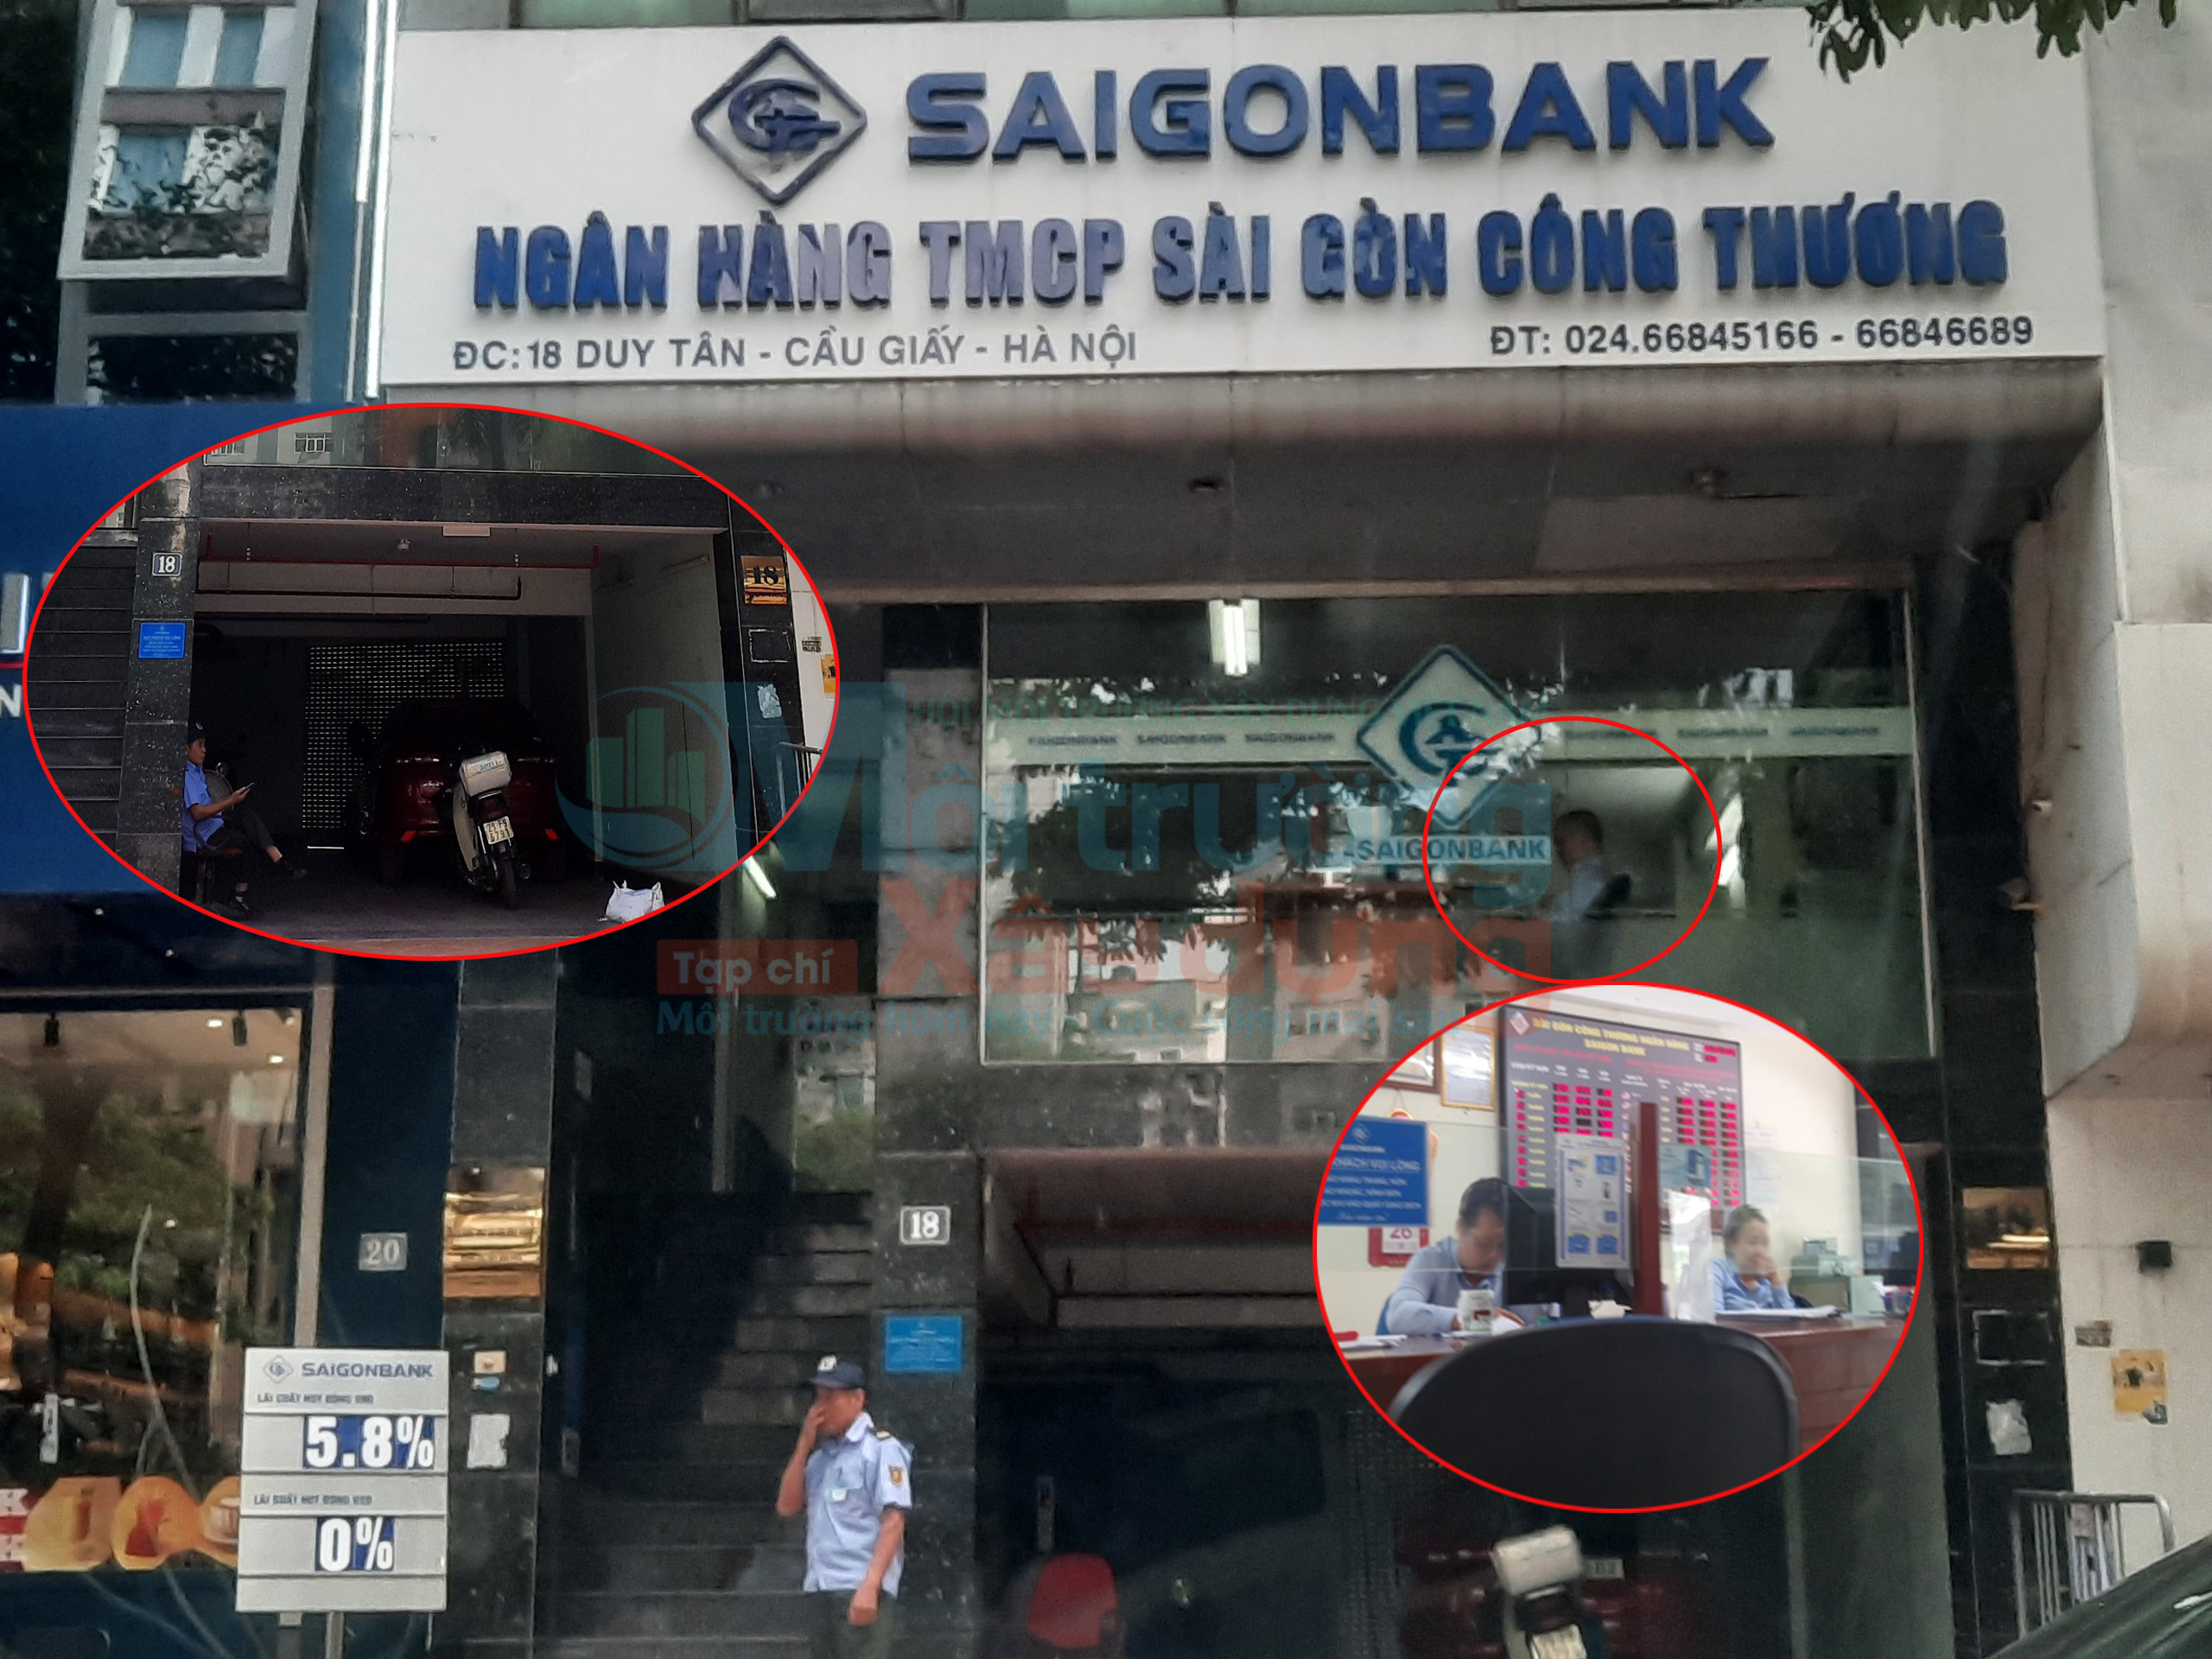 Phòng giao dịch SaiGonbank vẫn ngang nhiên hoạt động trong tòa nhà bị đình chỉ về PCCC